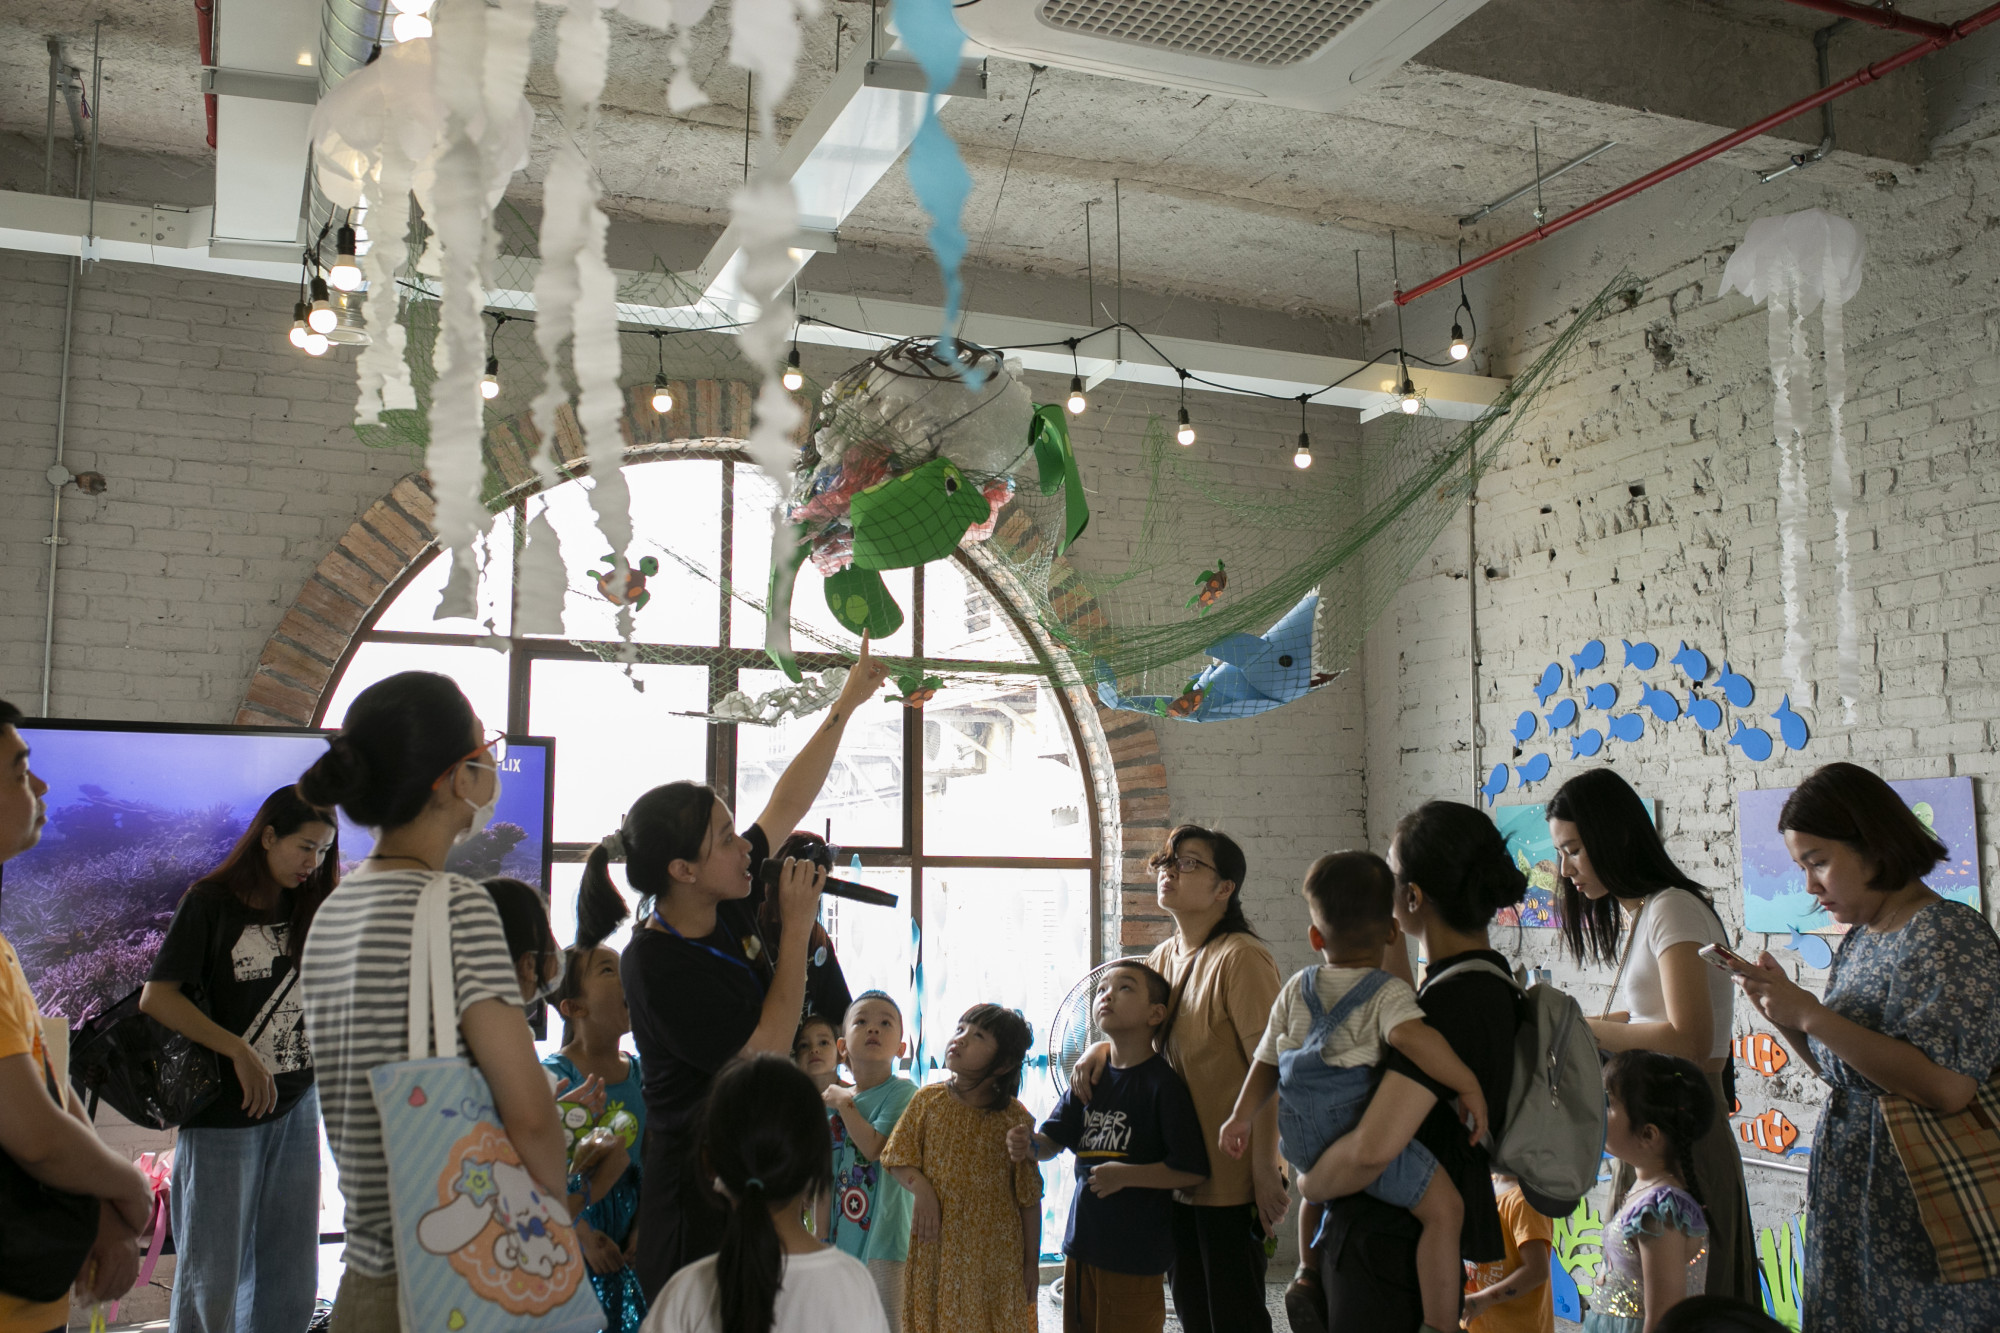 Trước đó, sự kiện Đại dương là nhà đã được tổ chức tại Hà Nội, thu hút phụ huynh và các bé tham dự